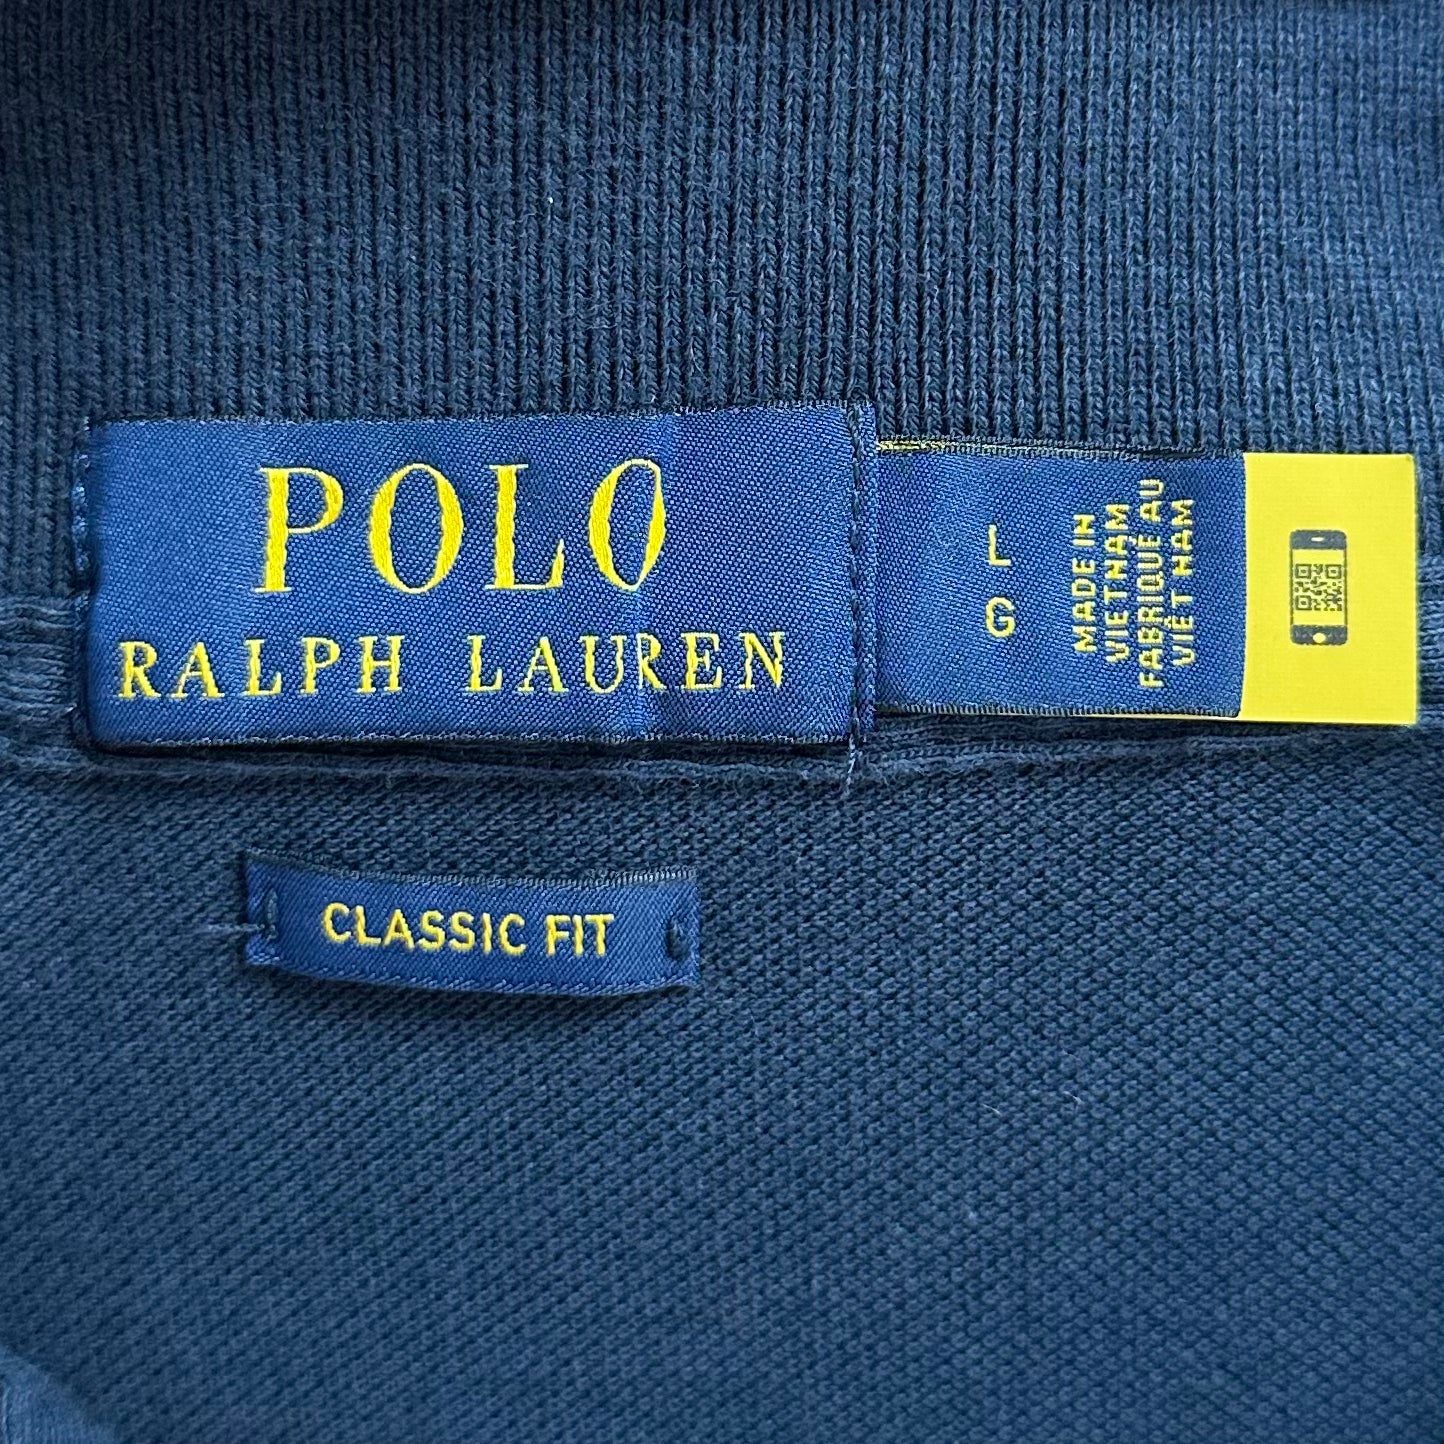 Camiseta Polo Ralph Lauren 🏇🏼color gris oscuro con logo big pony en dorado Talla L Entalle Clásico